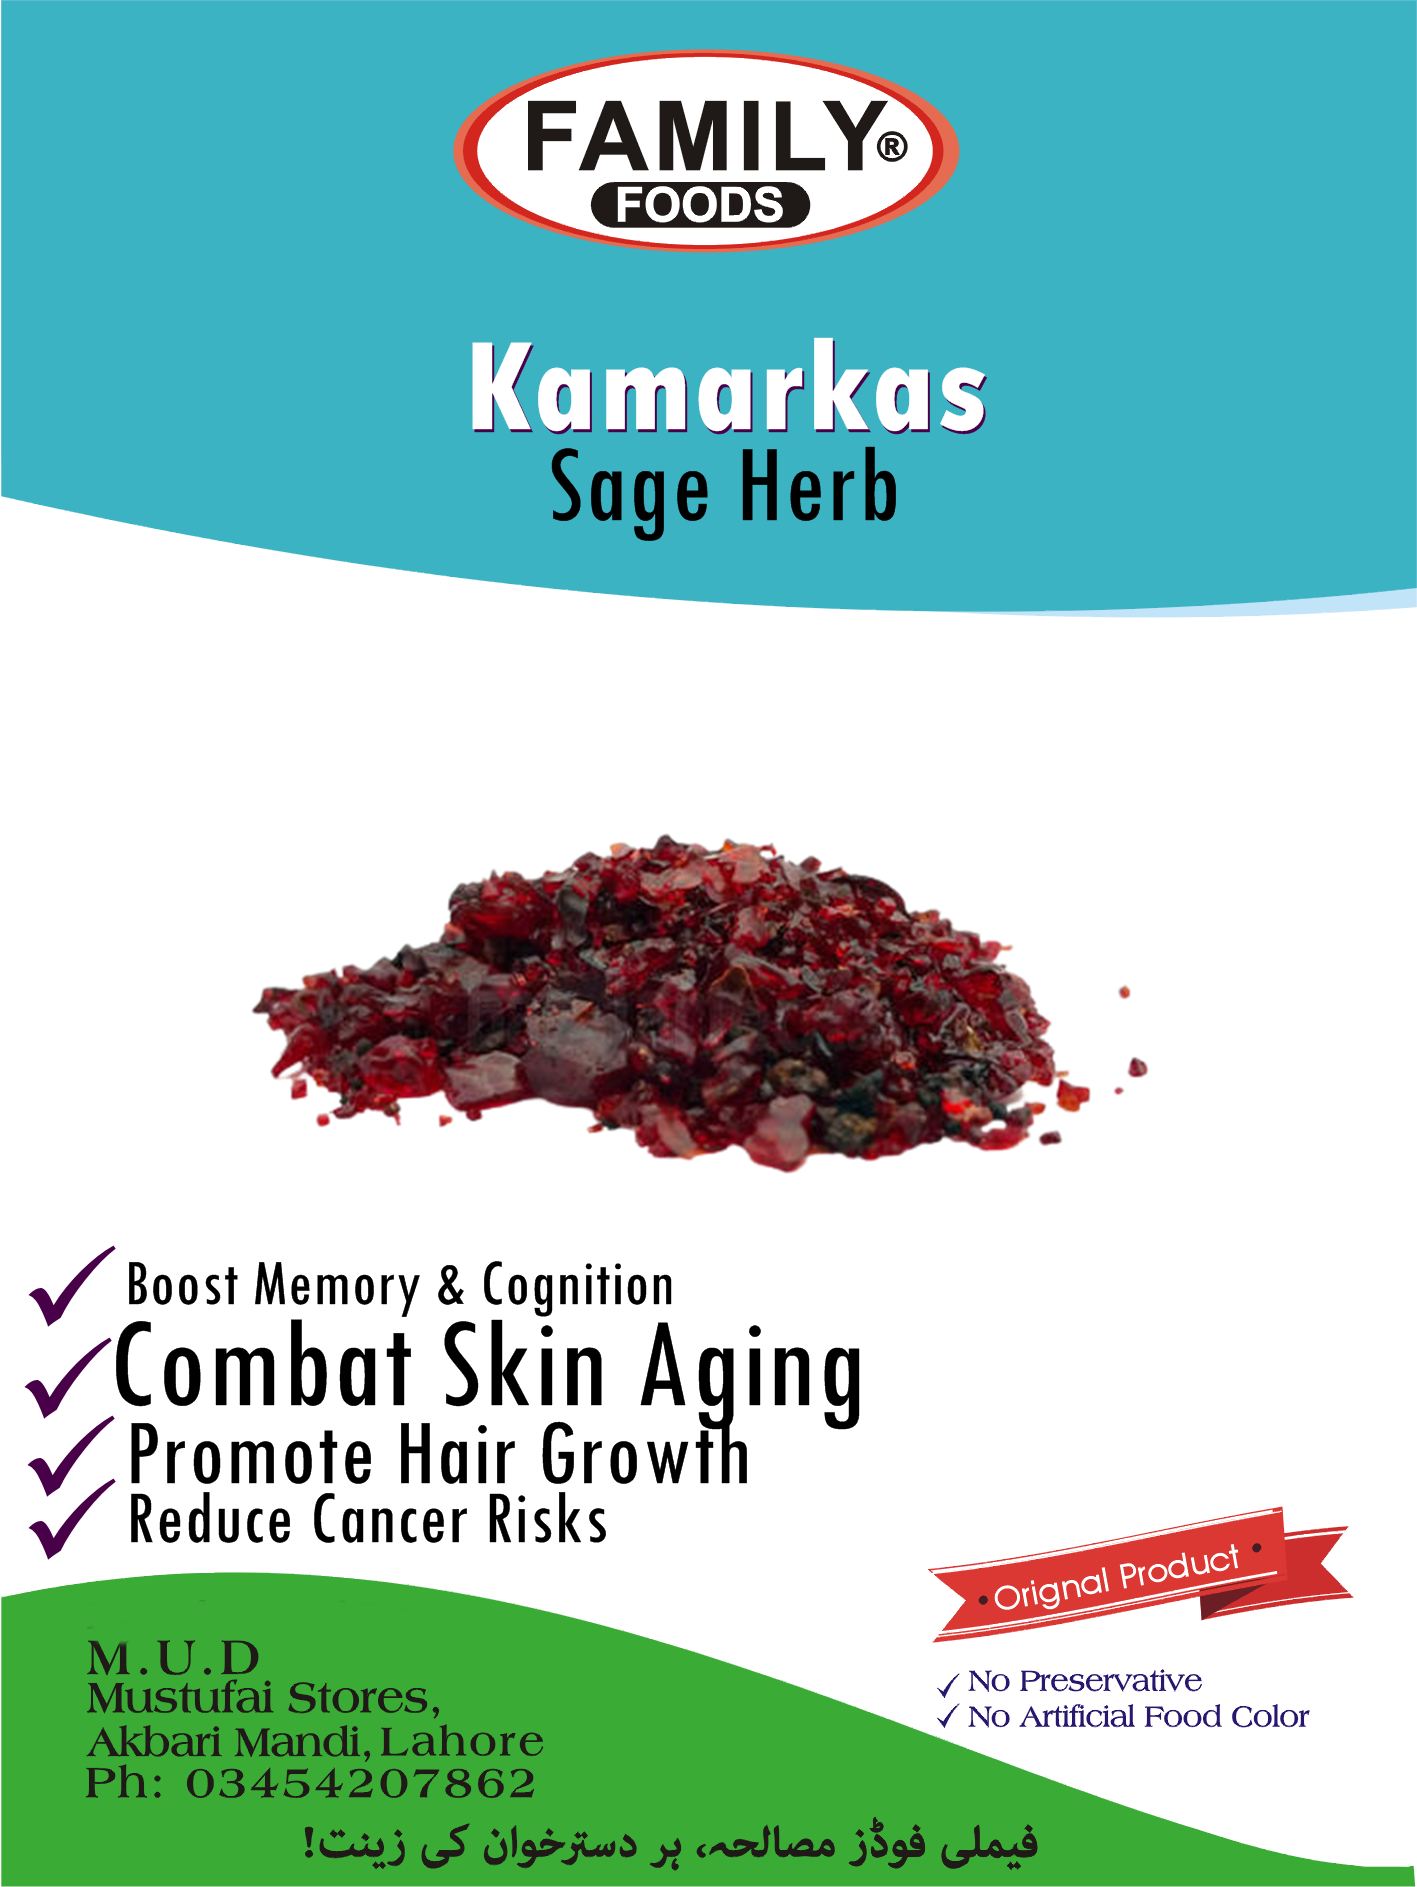 Sage Herb (Kamarkas).